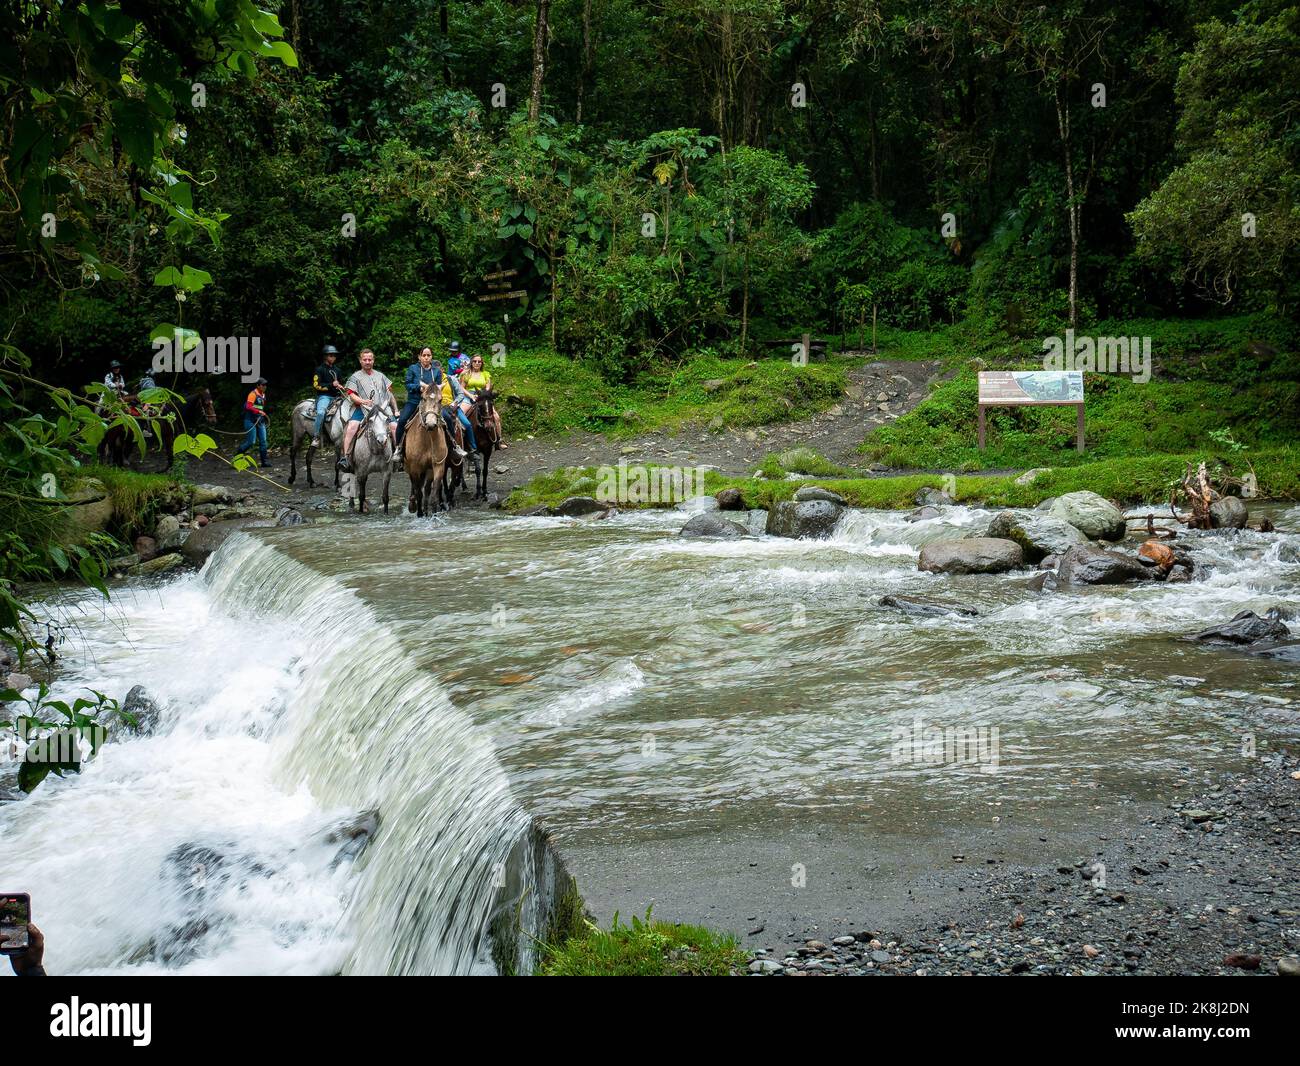 Valle di Cocora, Quindio, Colombia - Giugno 6 2022: I turisti pagano per lo sfruttamento degli animali, usano cavalli per non camminare sul fiume o sul terreno bagnato Foto Stock